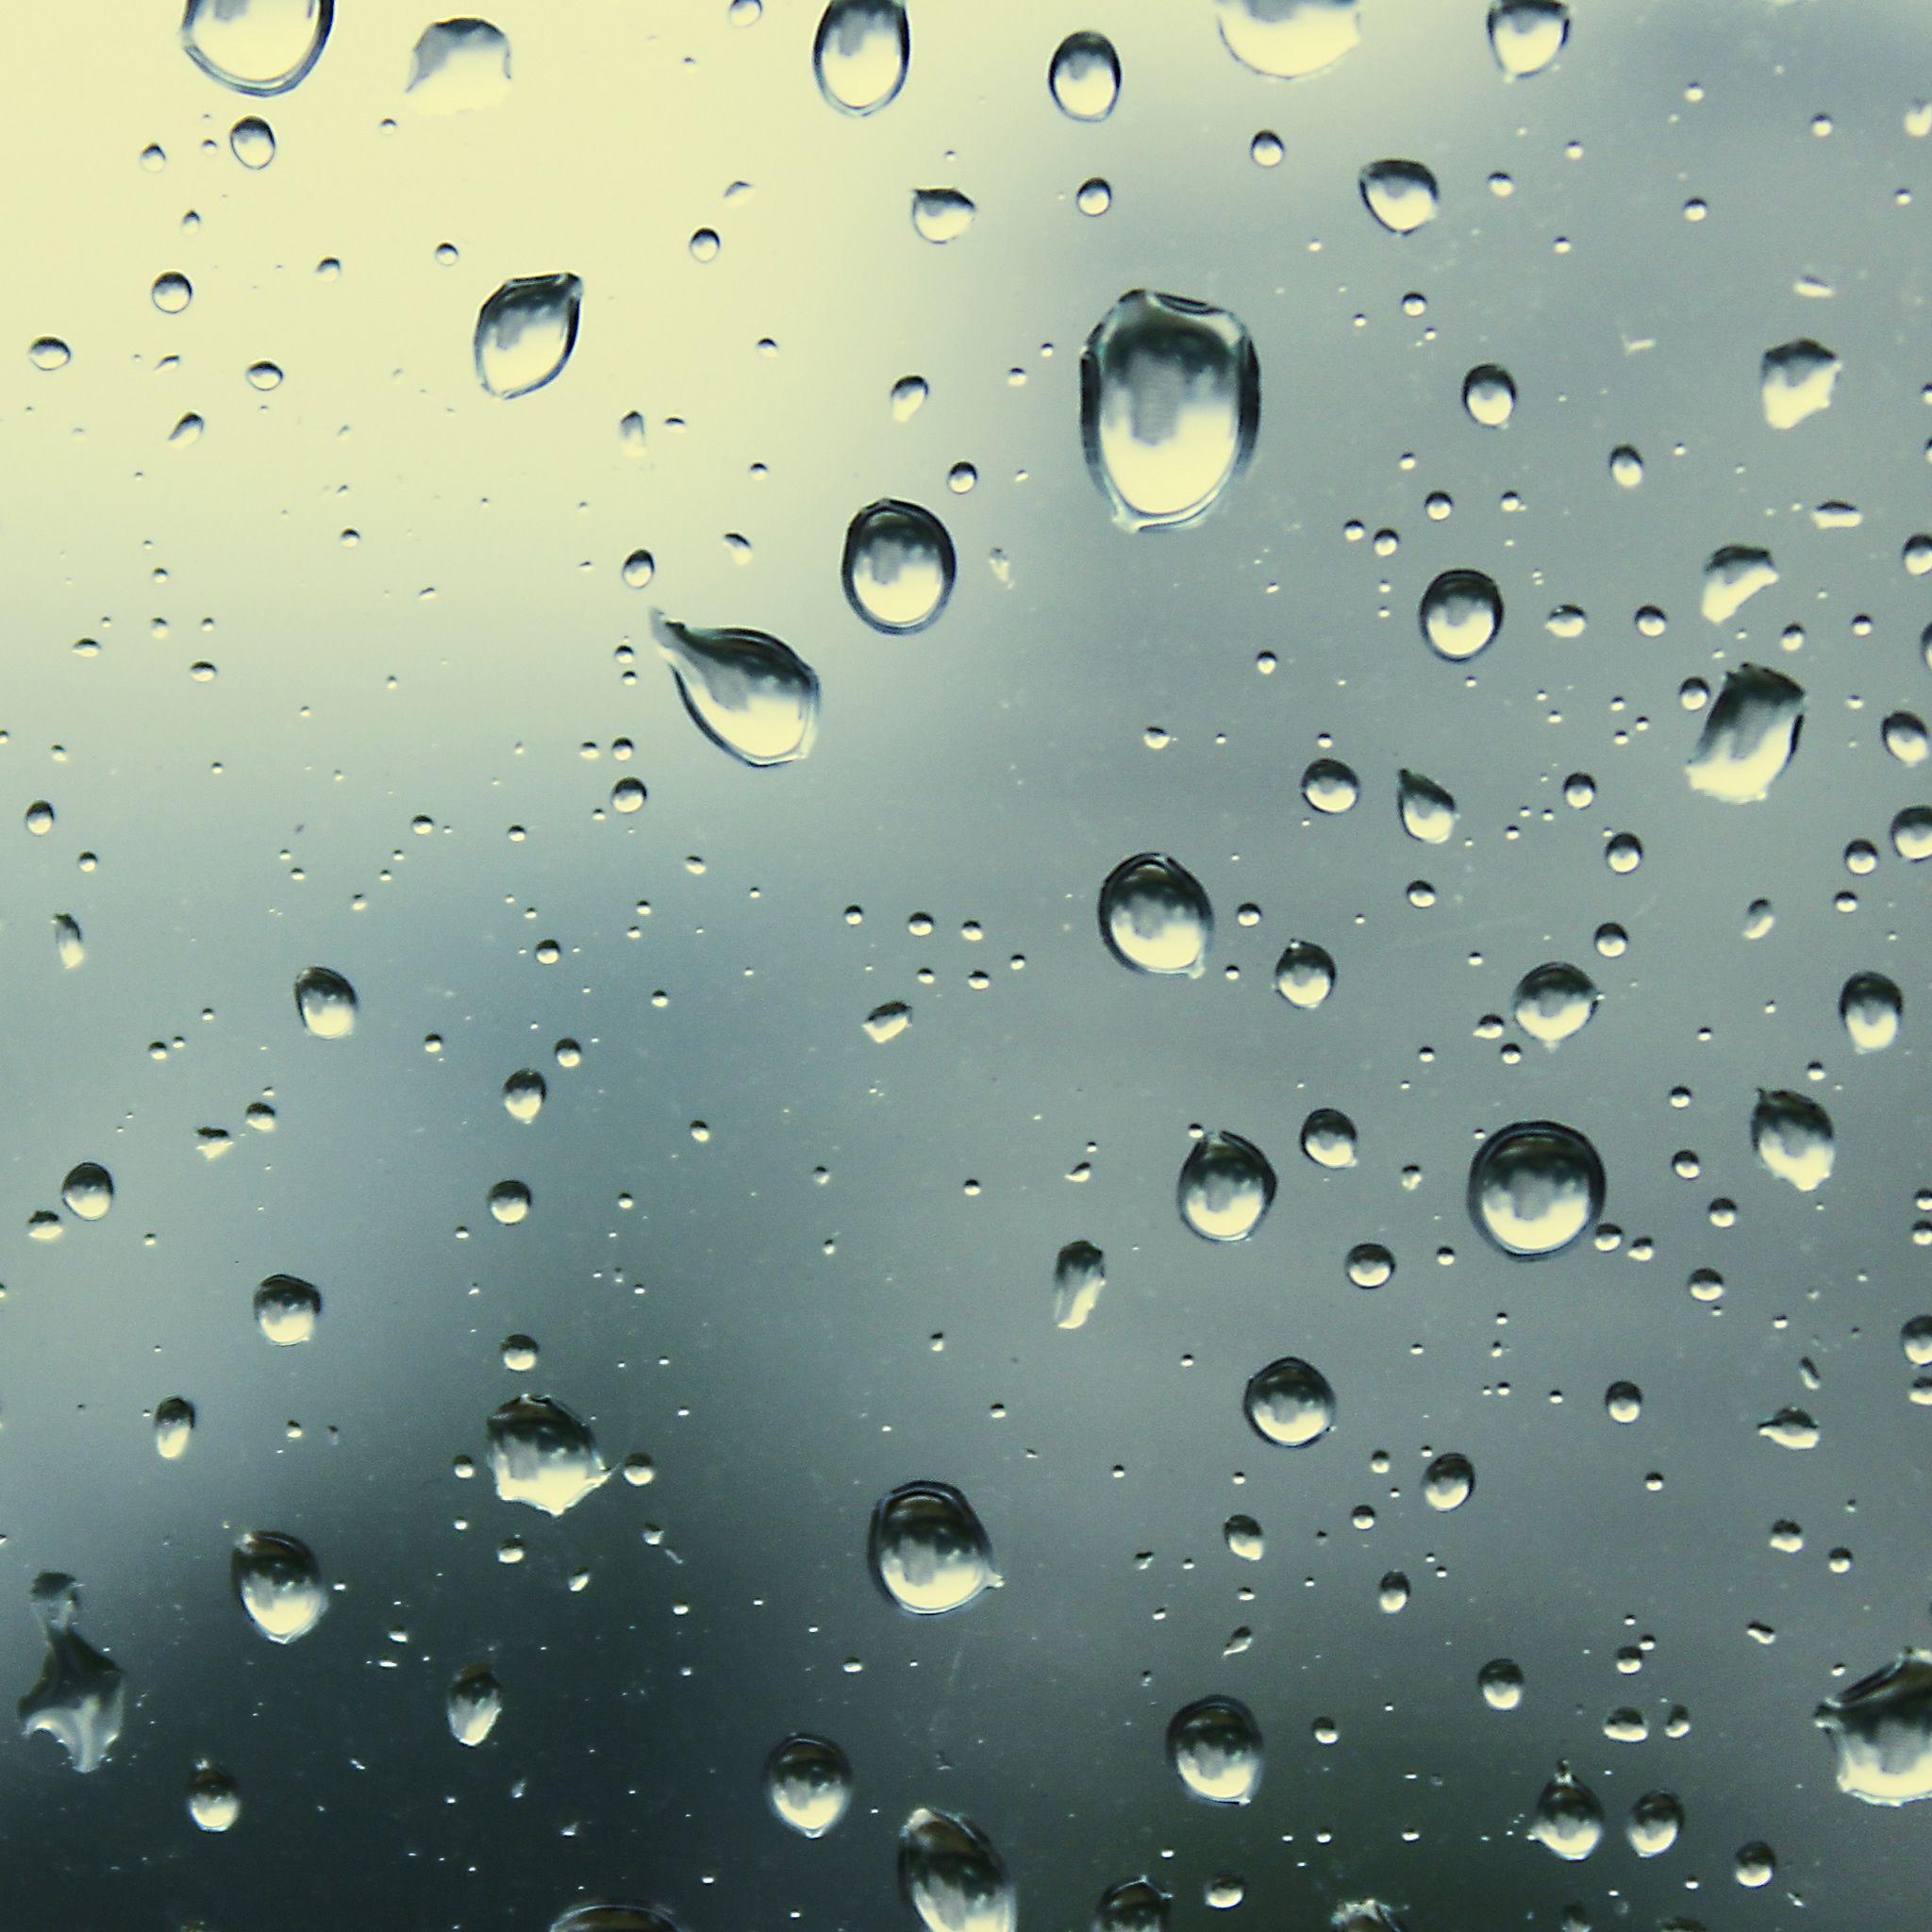 Rain Drops 5 iPad Air Wallpaper Download. iPhone Wallpaper, iPad